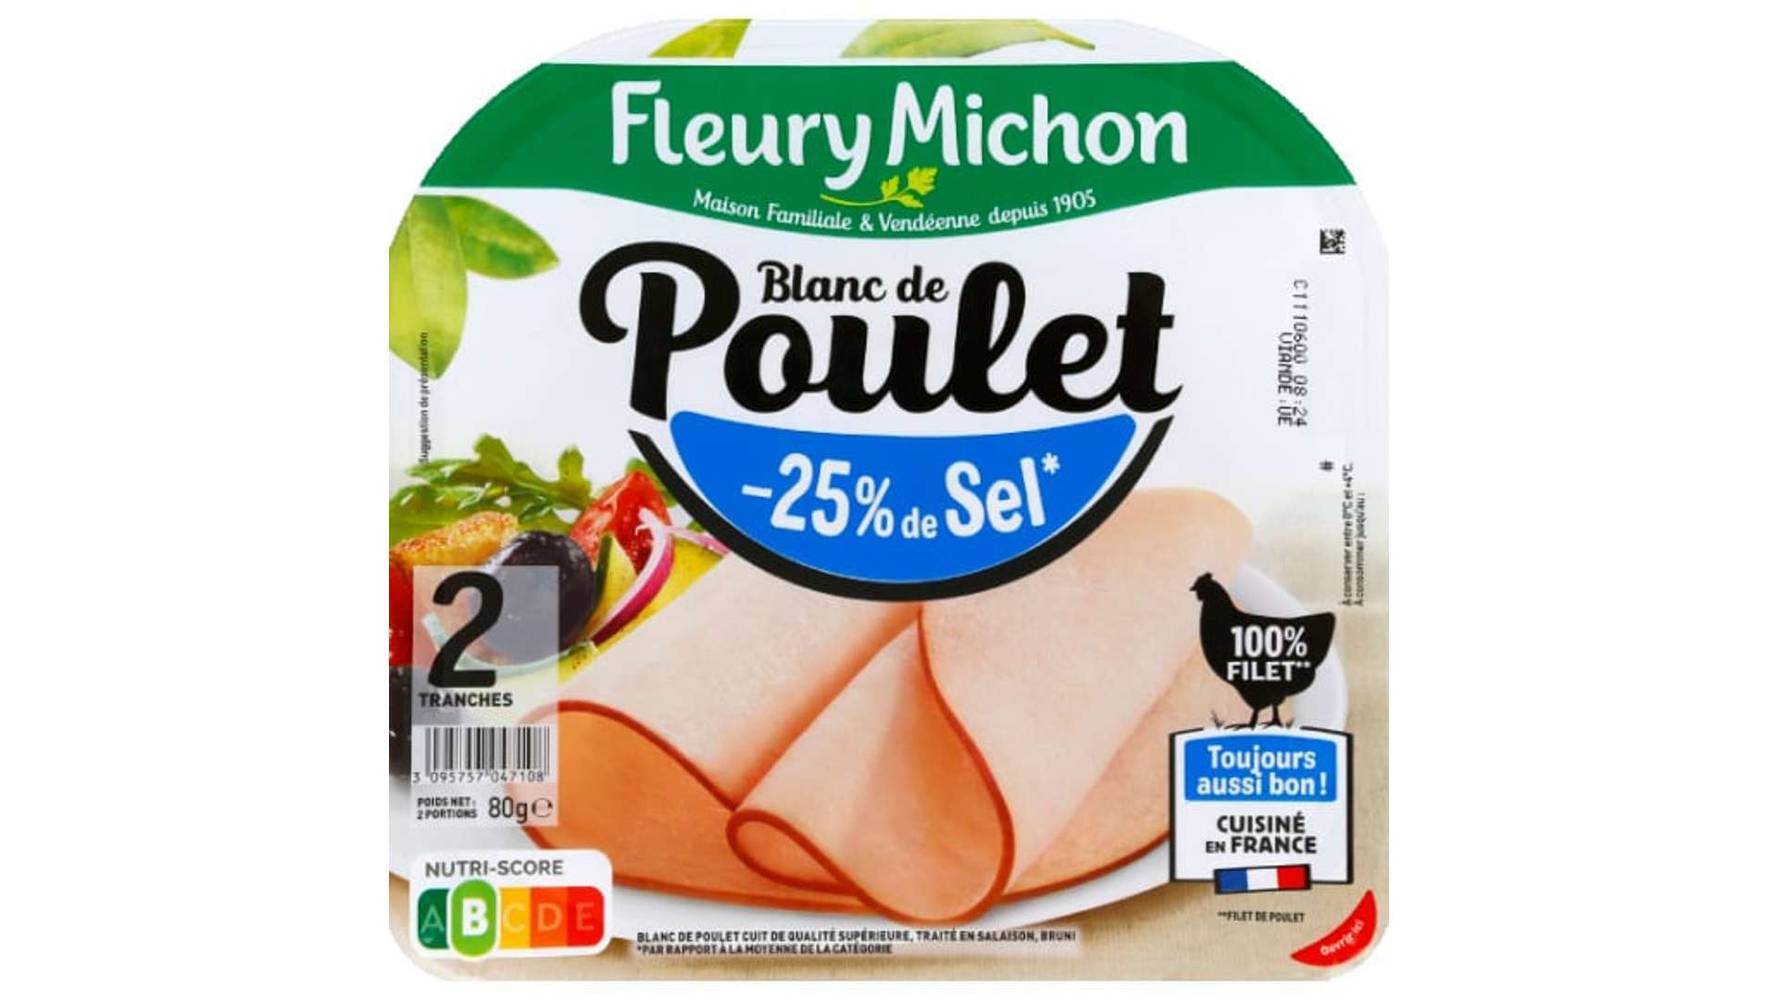 Fleury Michon - Blanc de poulet (2 pièces)